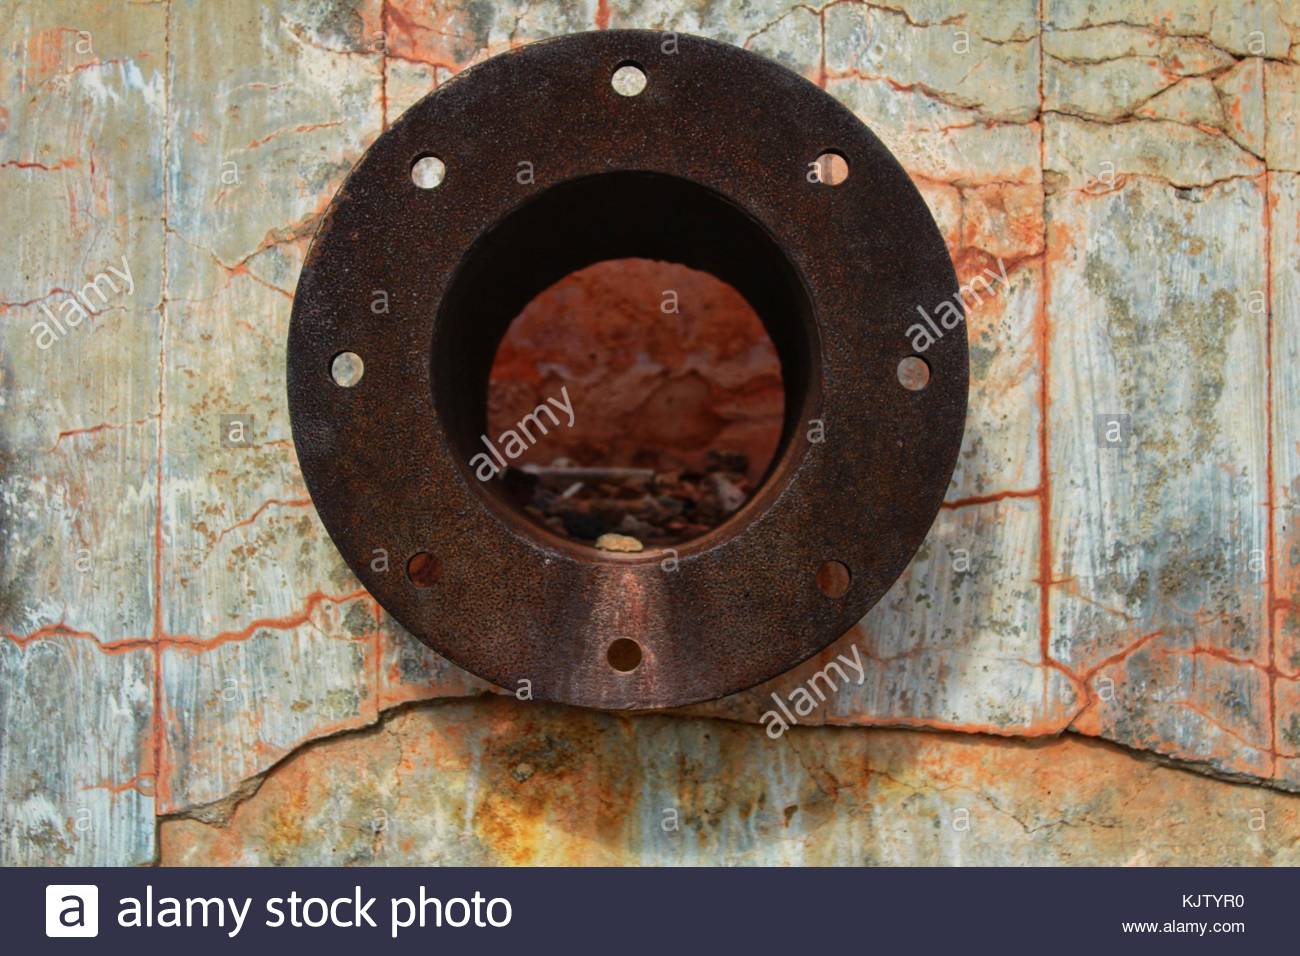 rusty pipe on stone KJTYR0